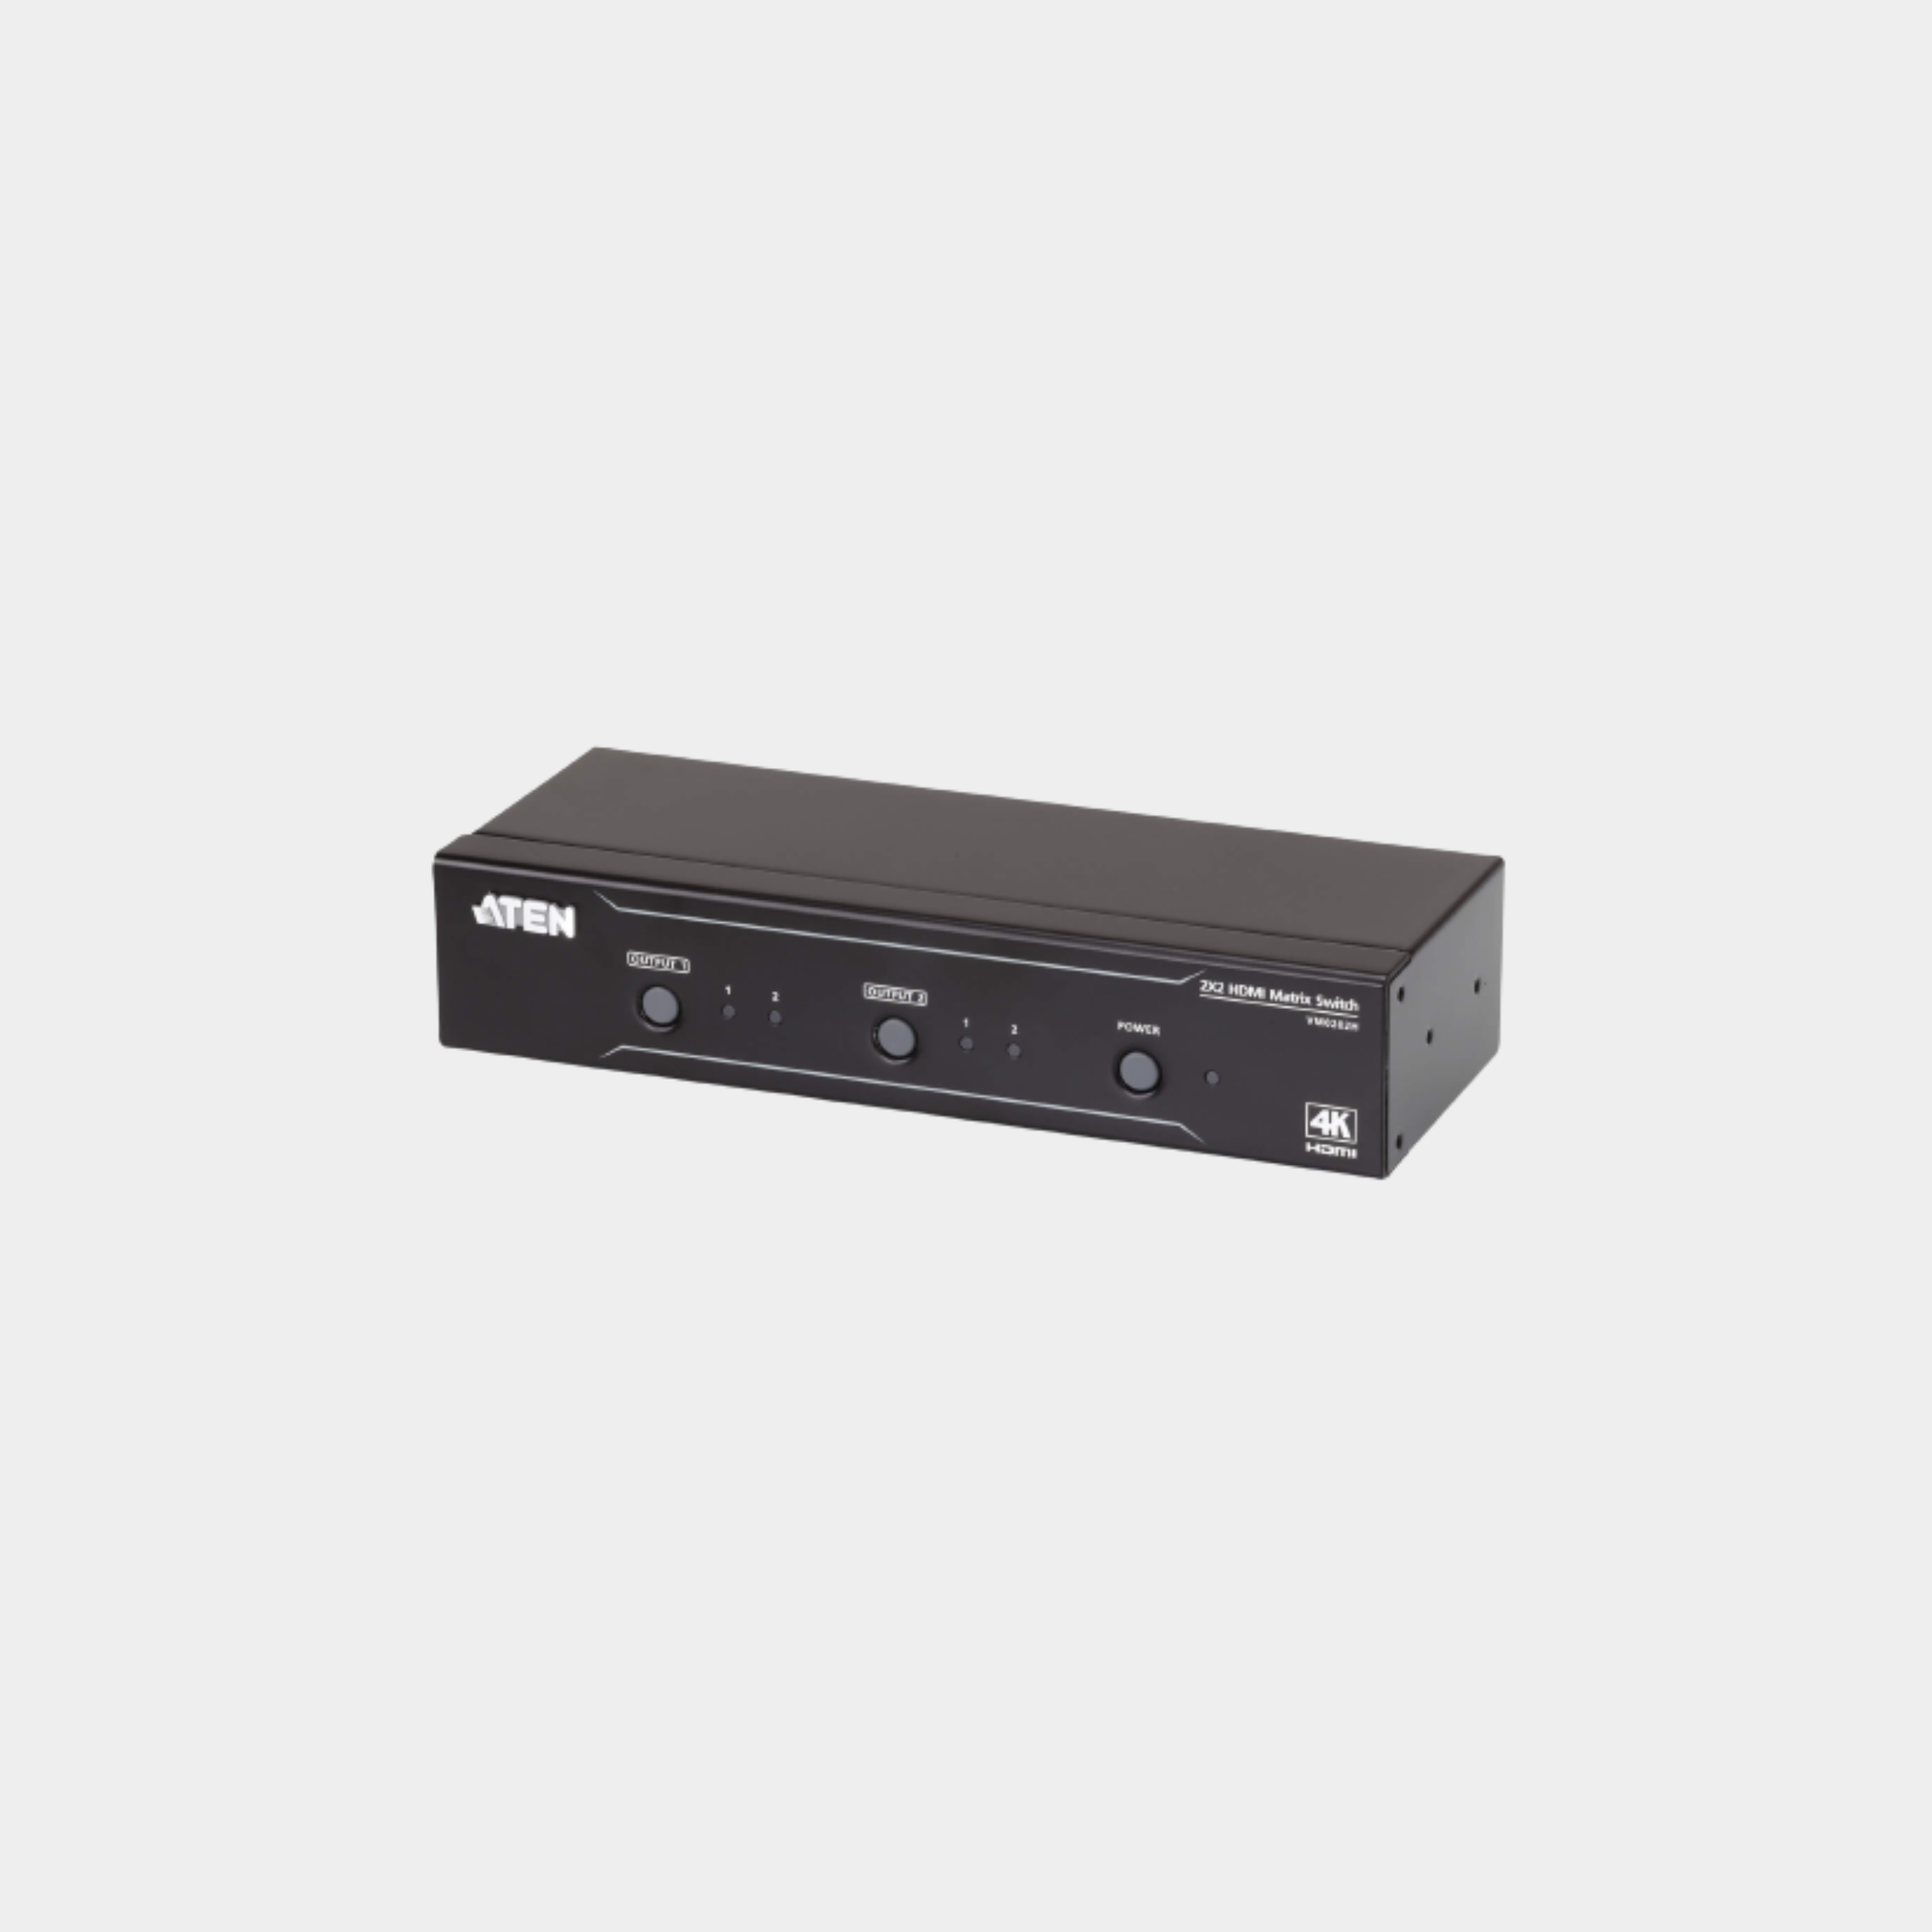 Aten 2 x 2 True 4K HDMI Matrix Switch with Audio De-Embedder(ATEN VM0202HB)